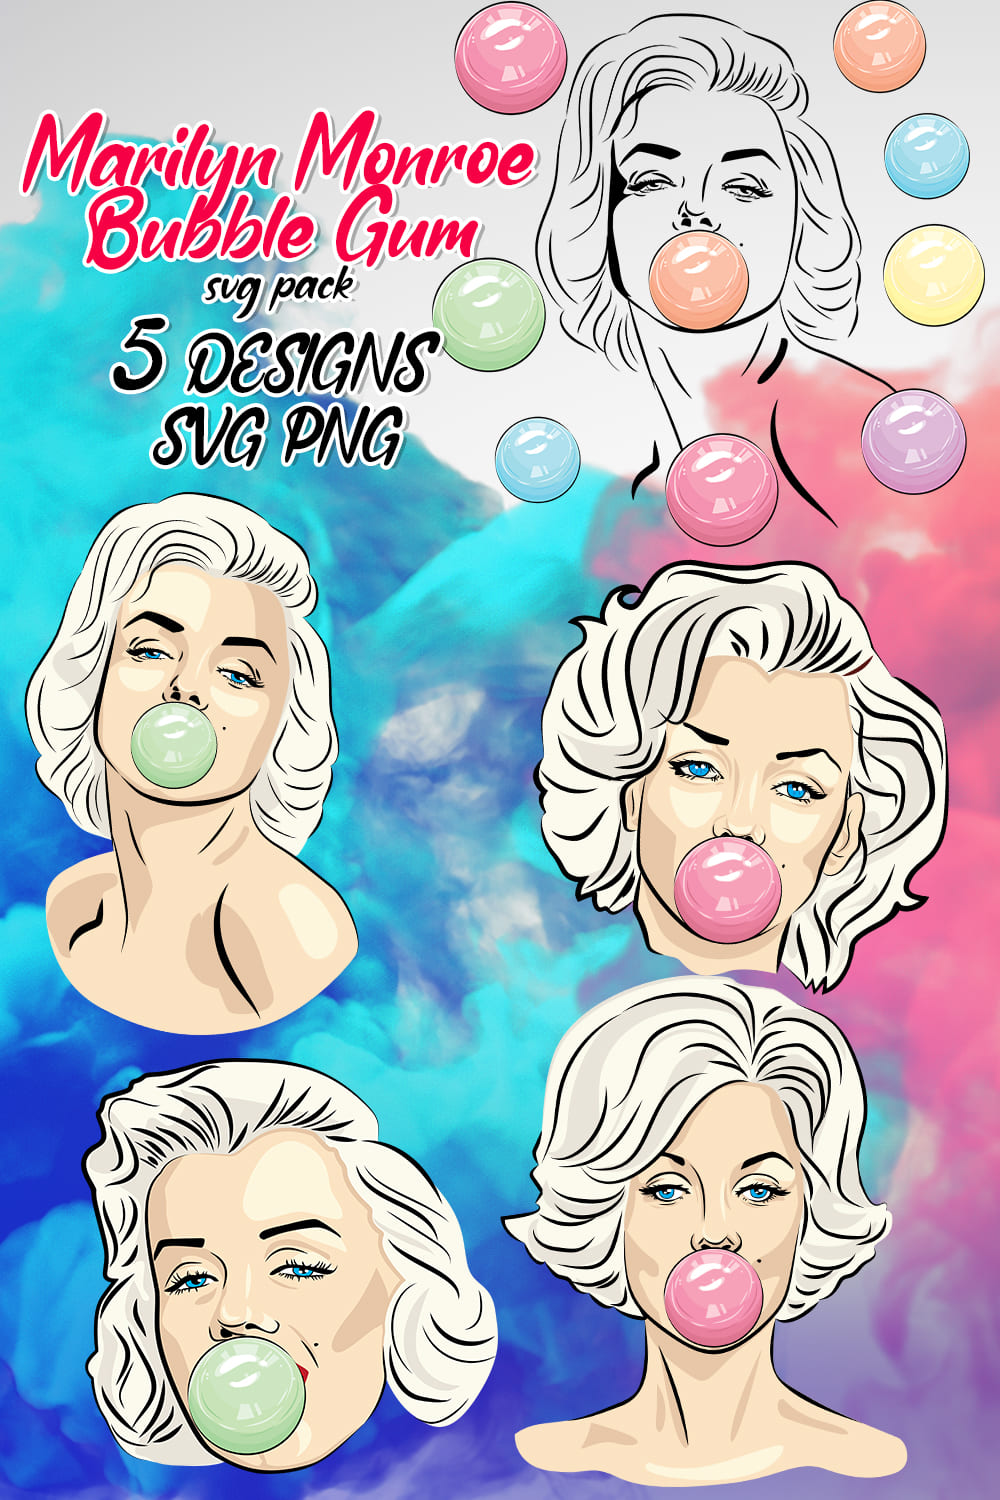 Marilyn Monroe illustrations in a pop ert style.